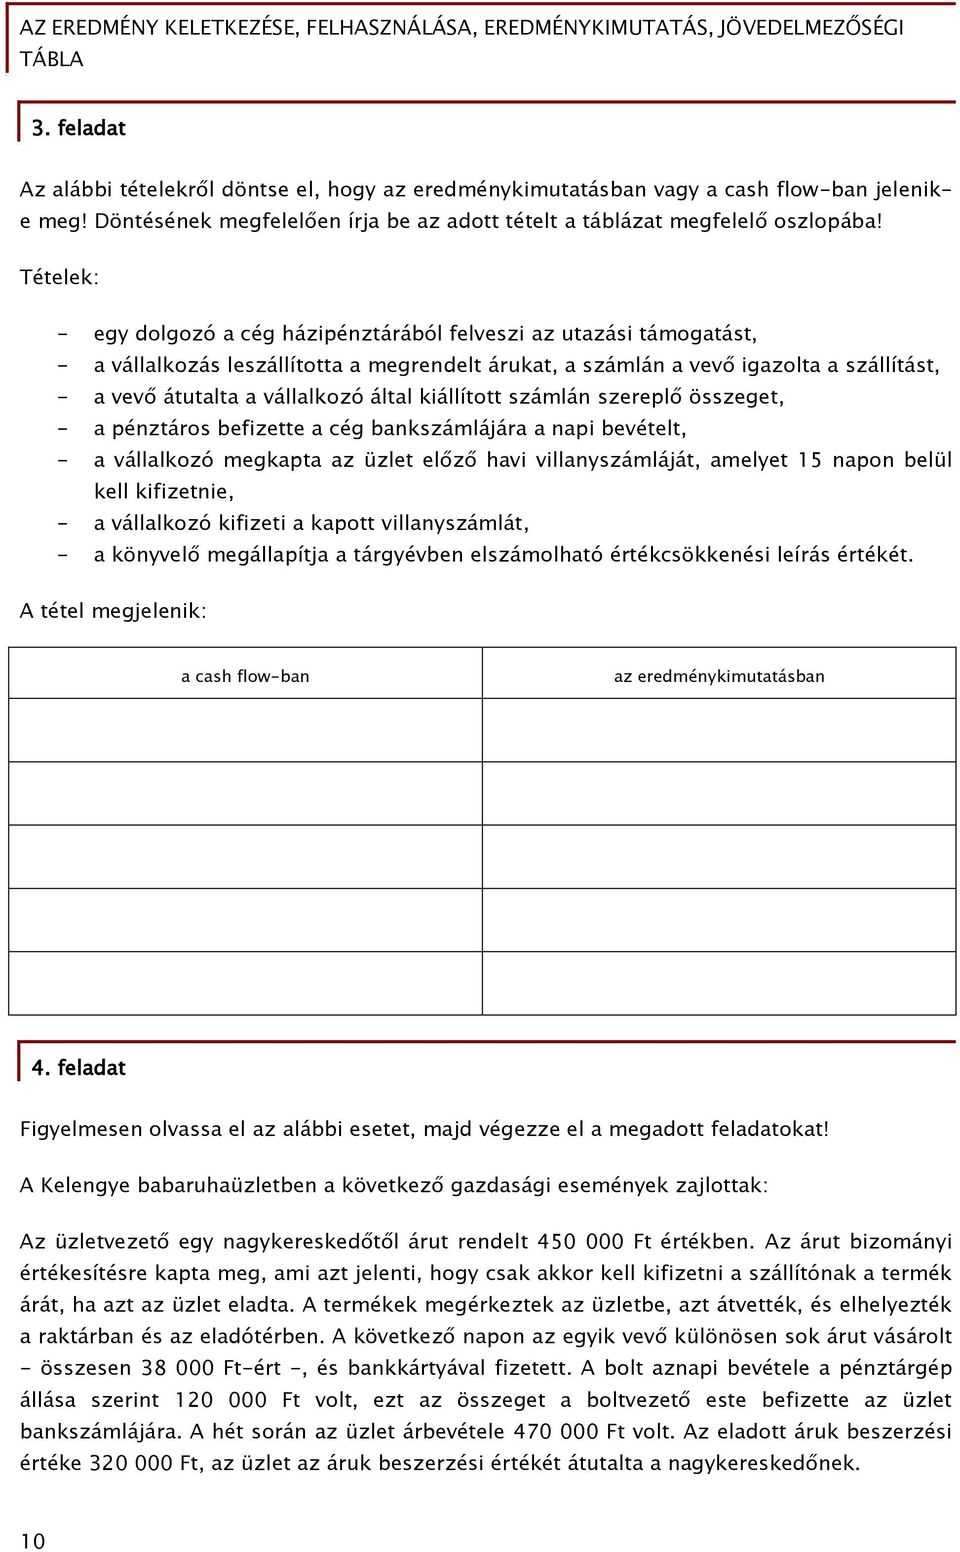 Az eredmény keletkezése, felhasználása, eredménykimutatás, jövedelmezőségi  tábla - PDF Ingyenes letöltés